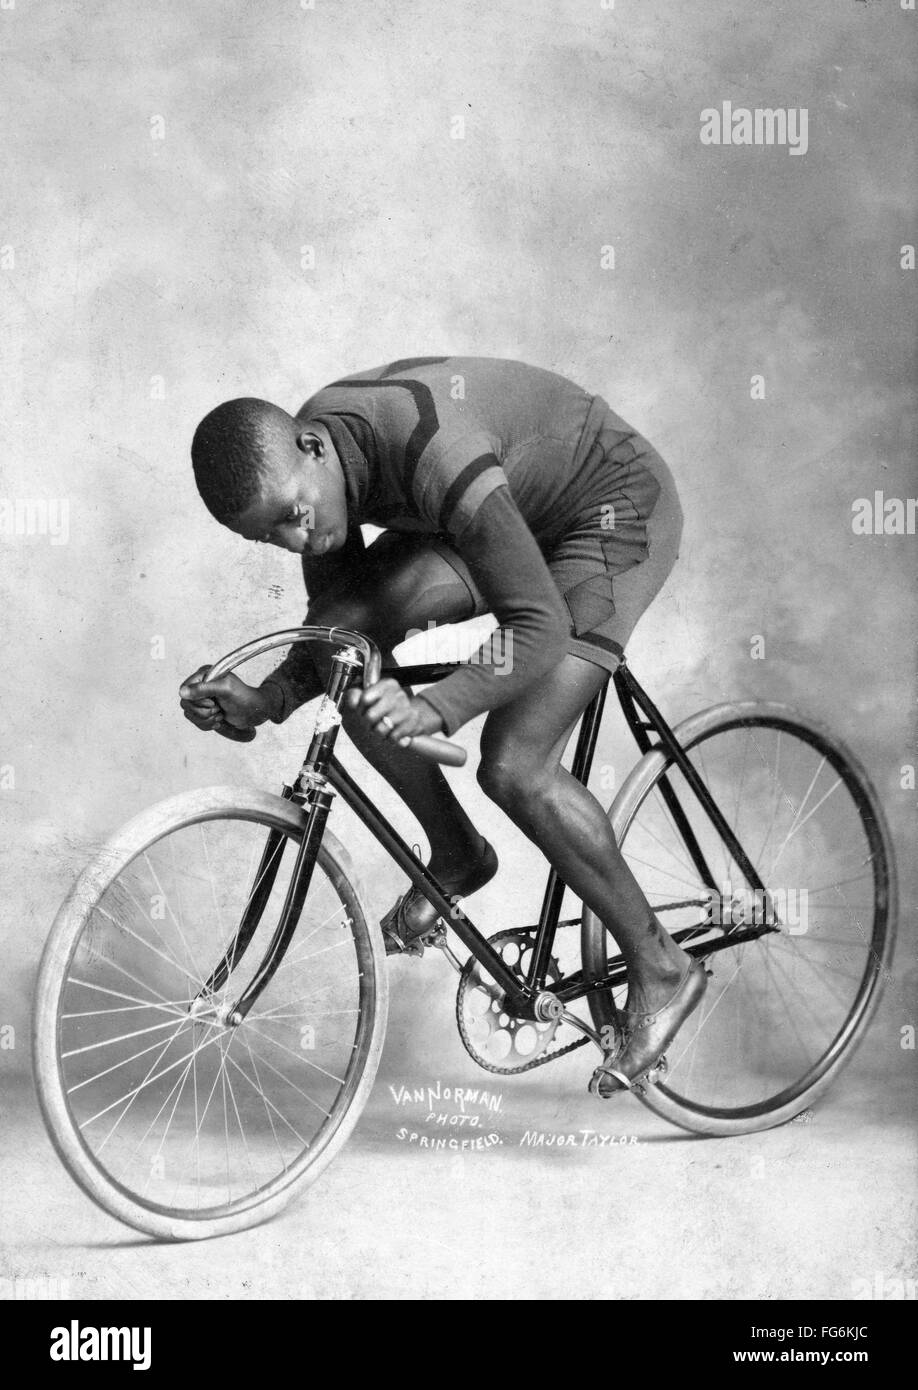 Walter Marshall 'Majeur' Taylor un cycliste qui a gagné le monde 1 mile (1,6 km) Championnat de cyclisme sur piste en 1899 Banque D'Images